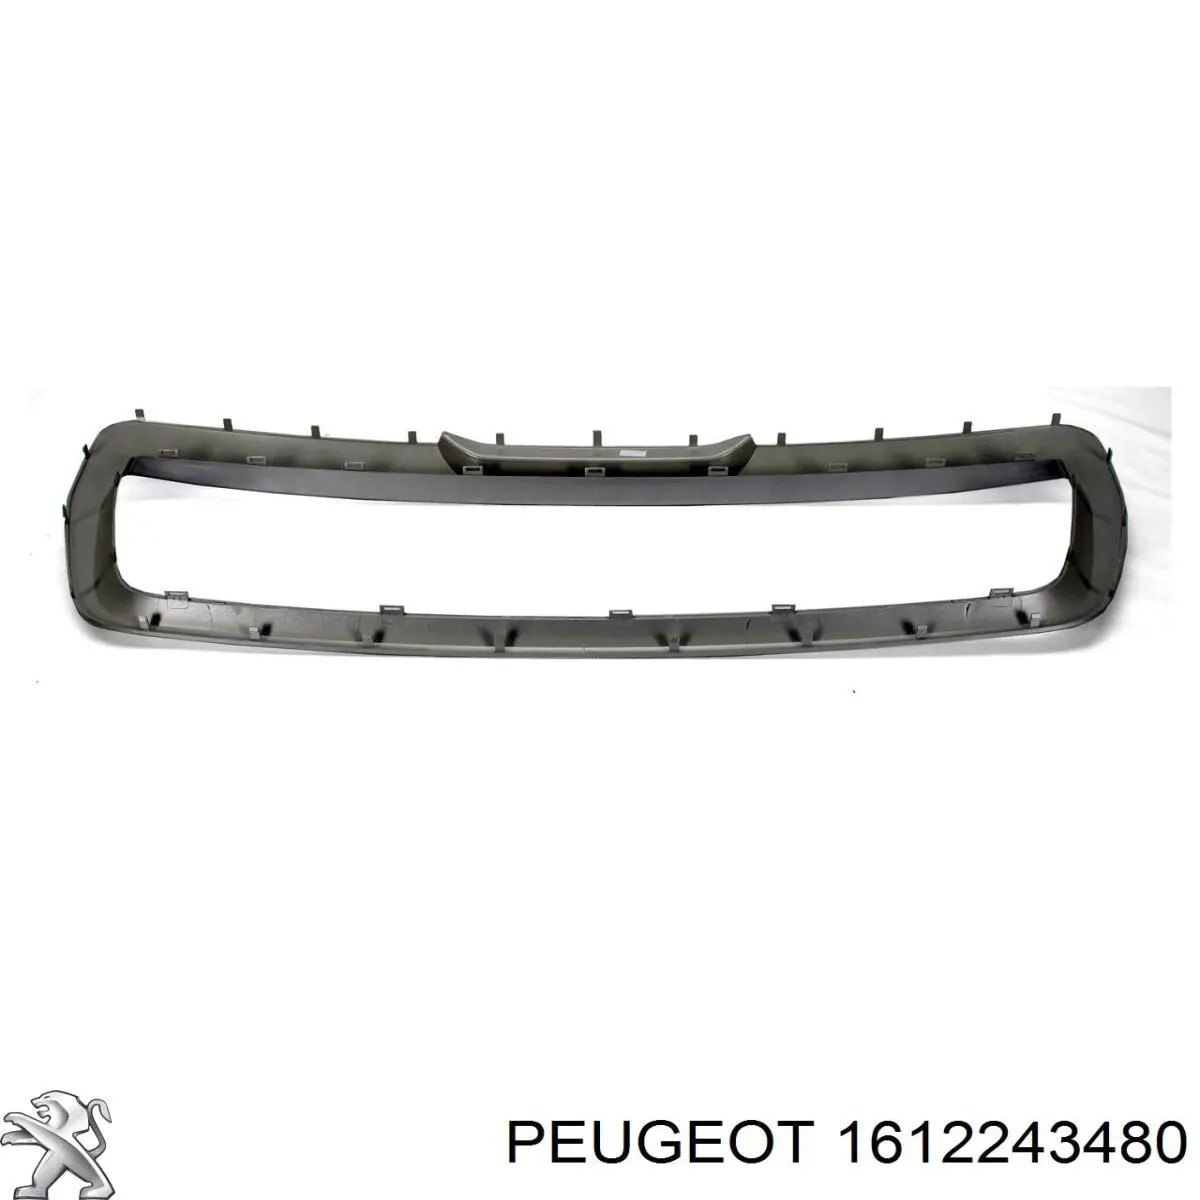 Moldura de rejilla de radiador 1612243480 Peugeot/Citroen